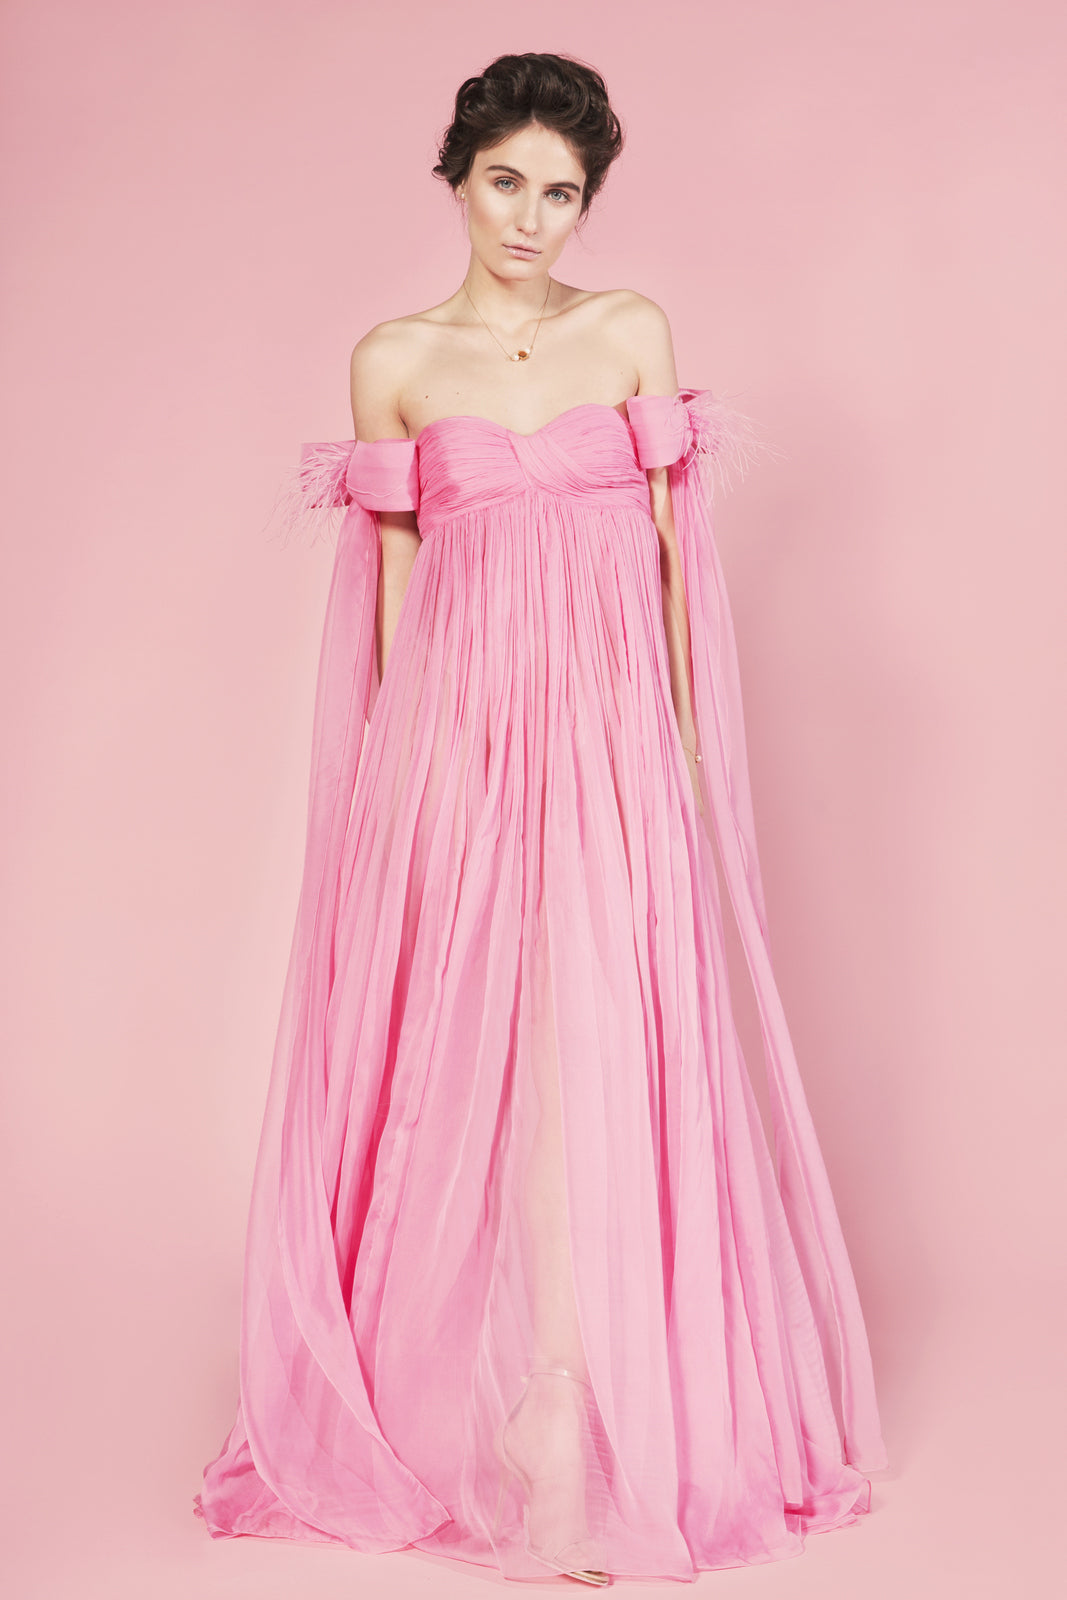 Rochie lungă roz Sofia din voal de mătase naturală fronsată manual